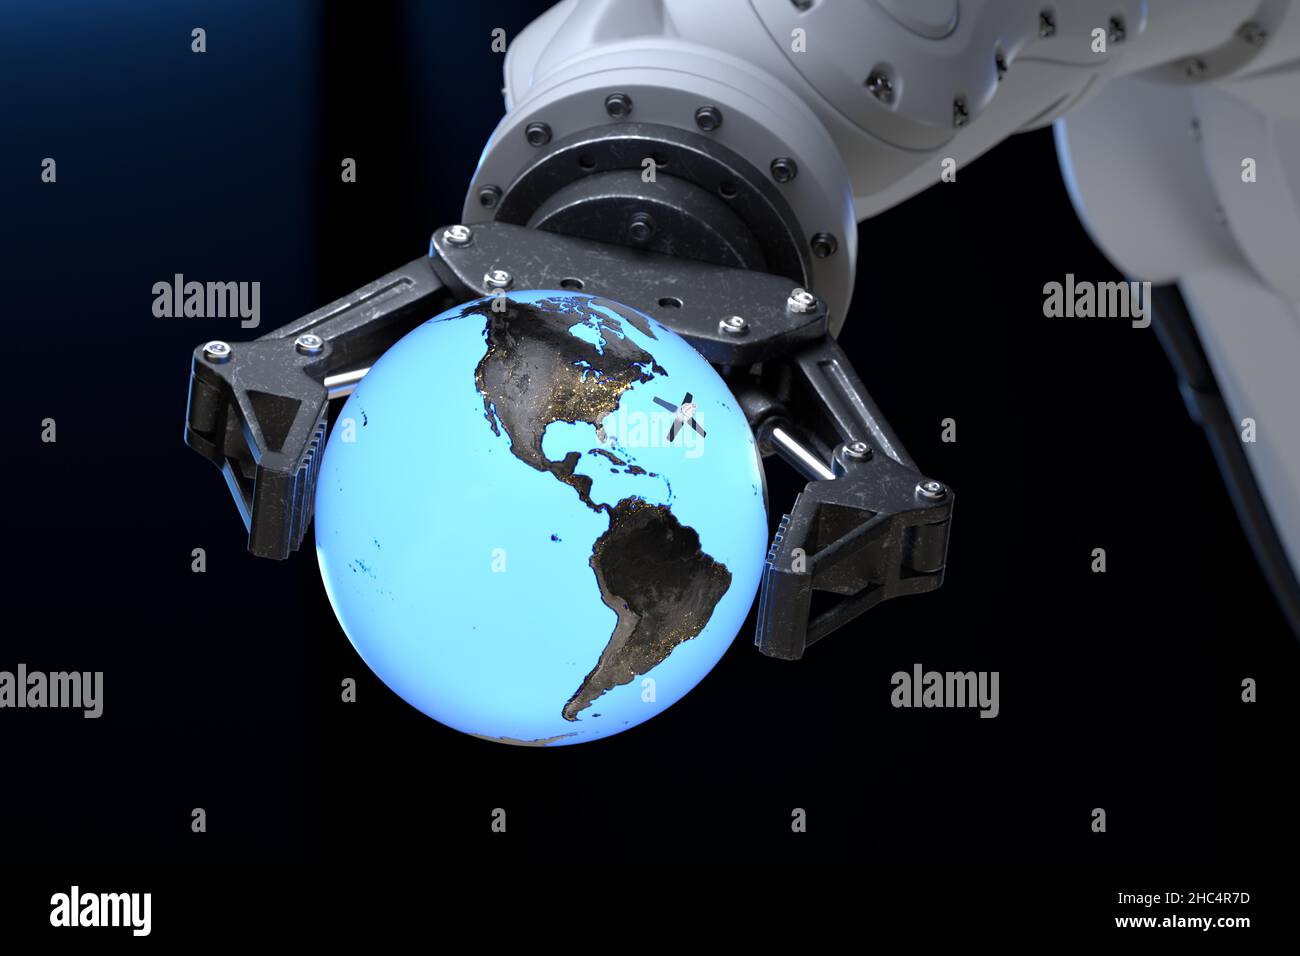 High-Tech-Roboterarm, der einen Globus mit umkreisenden Satelliten in seinem Griff hält. 3D Abbildung Stockfoto